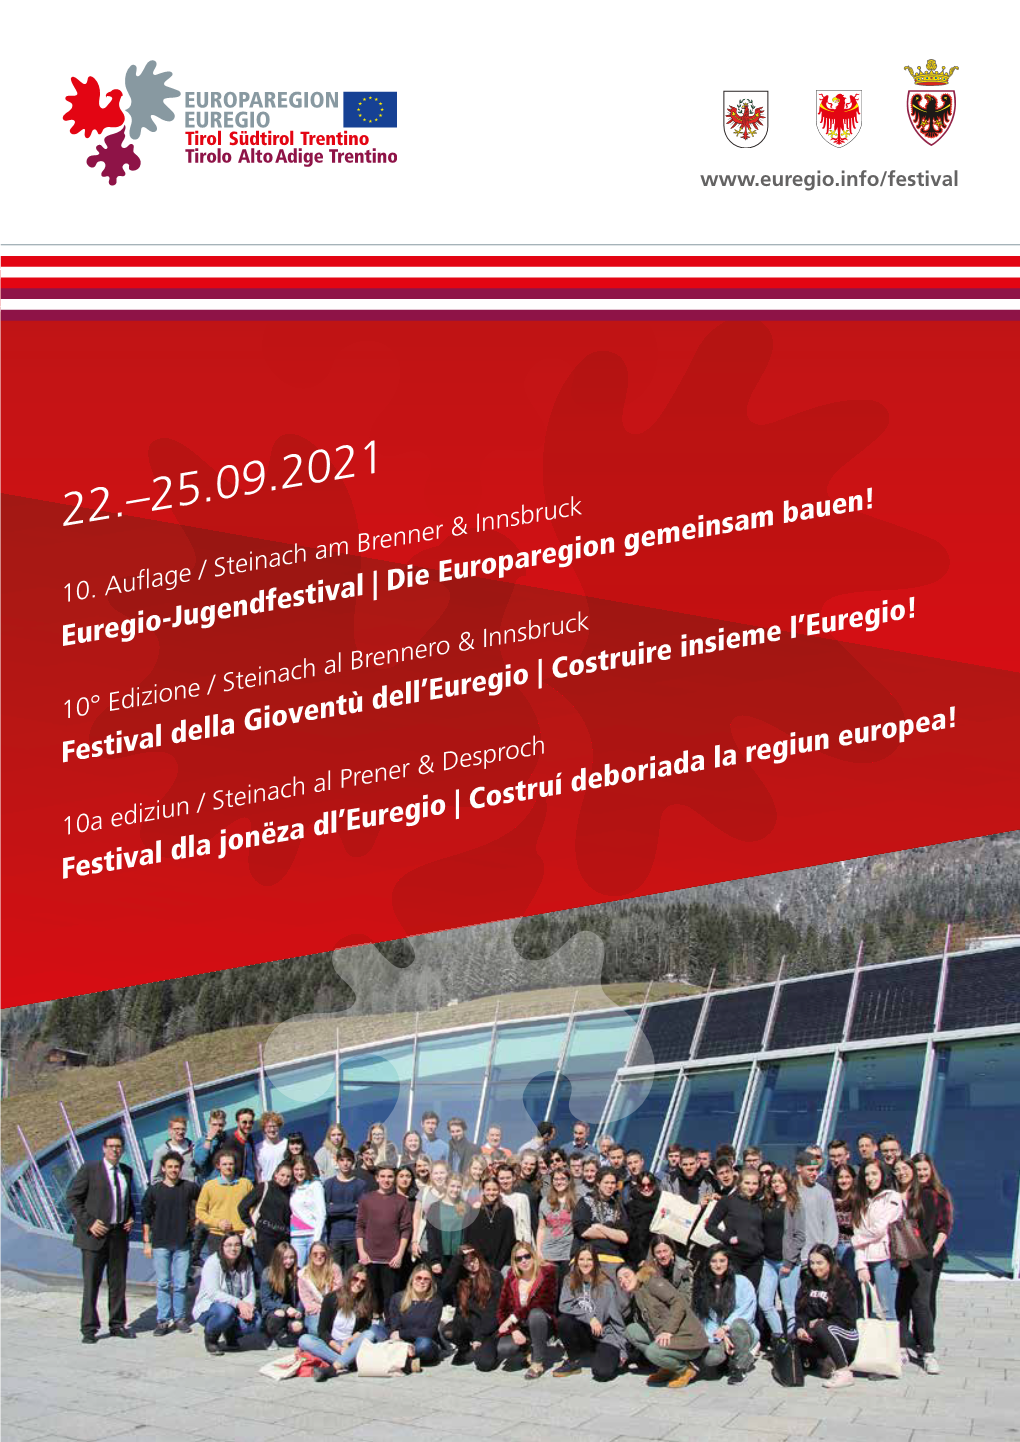 Euregio-Jugendfestival | Die Europaregion Gemeinsam Bauen!